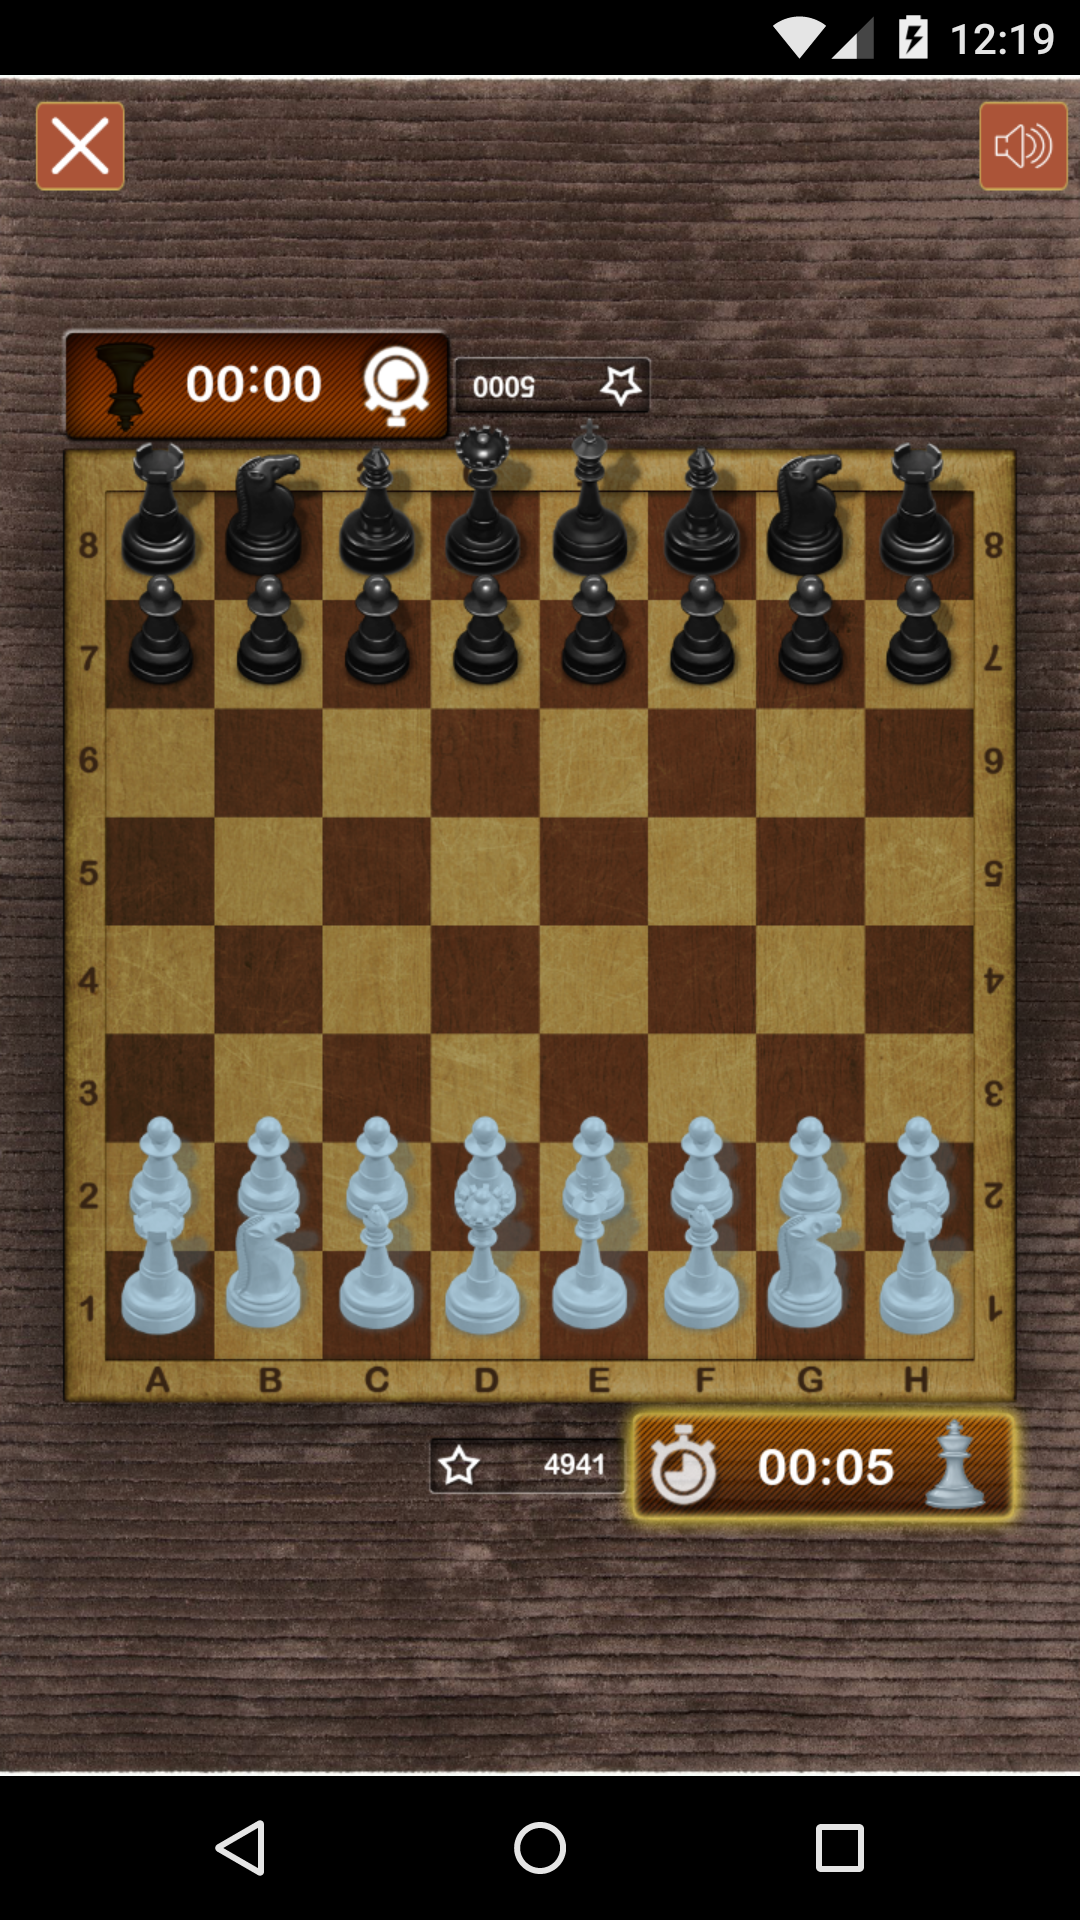  Chess Free